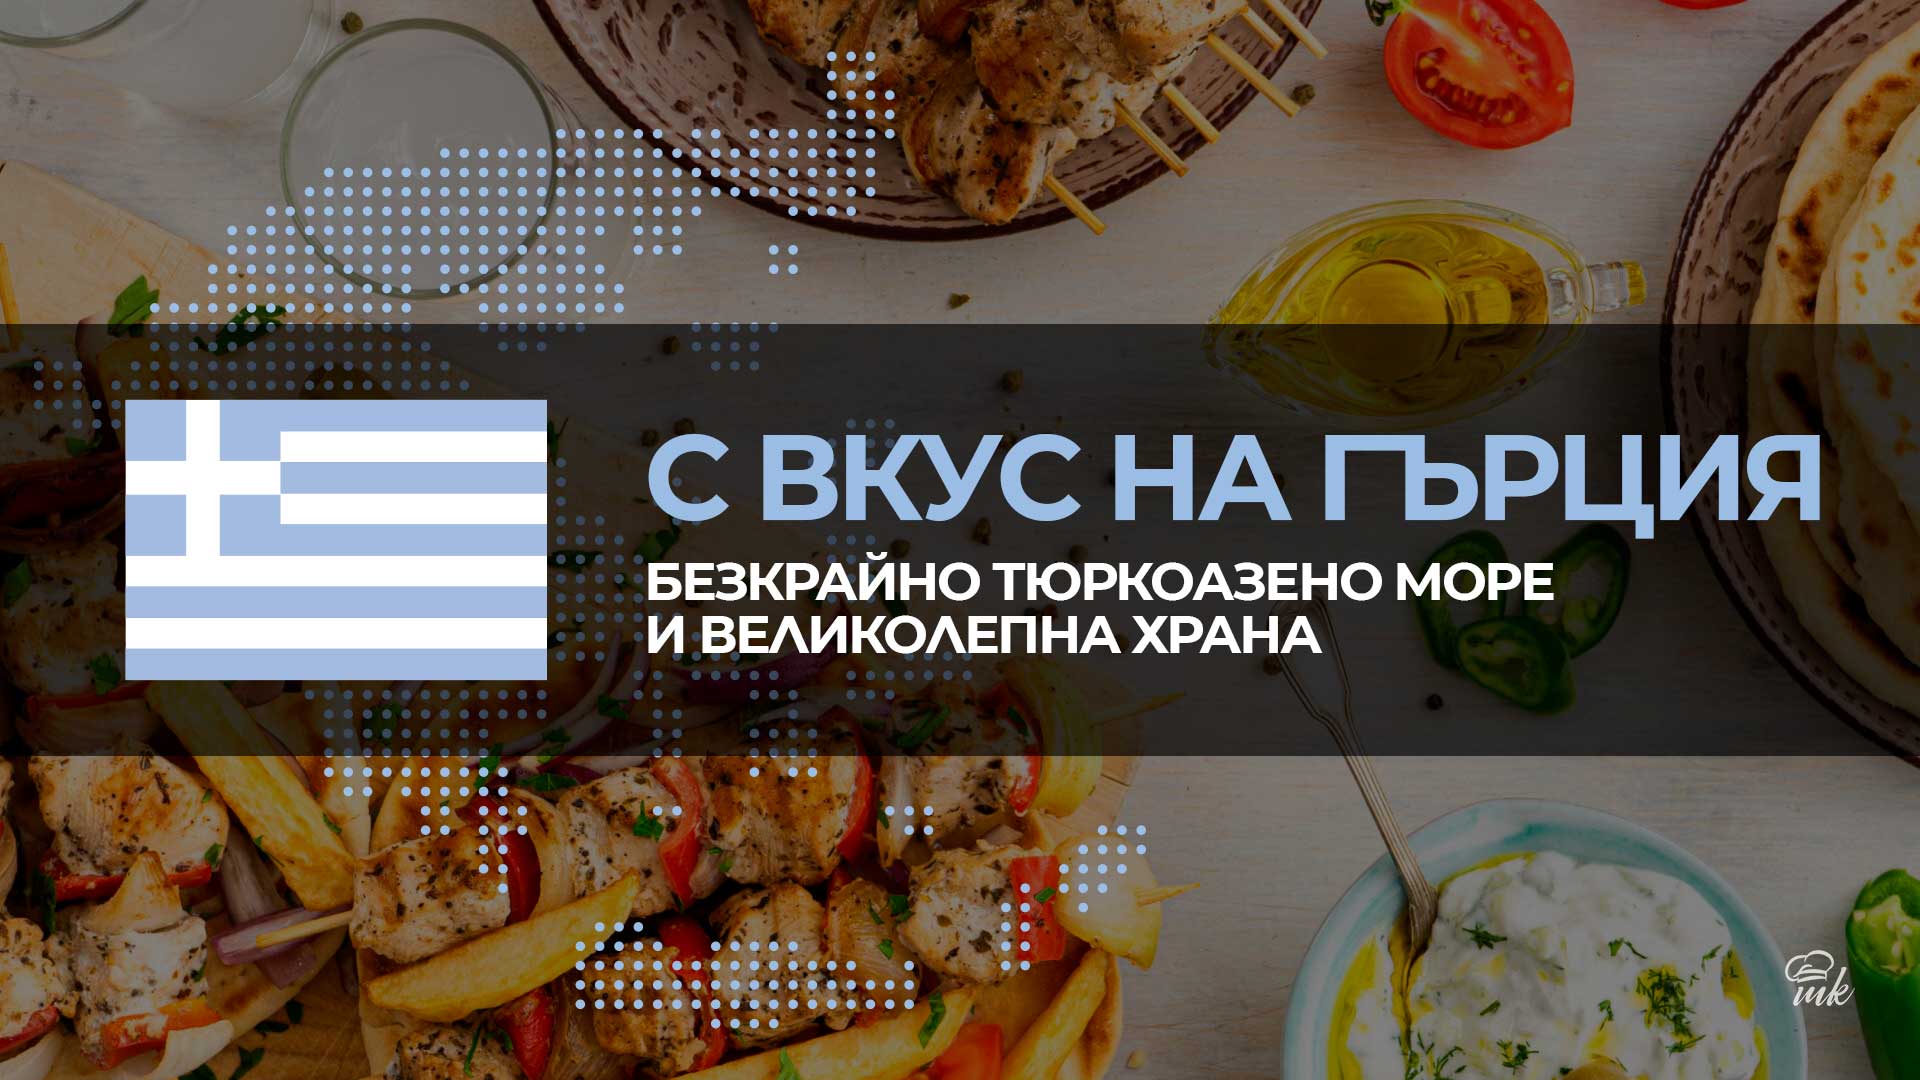 Гръцка седмица в Mate Kitchen